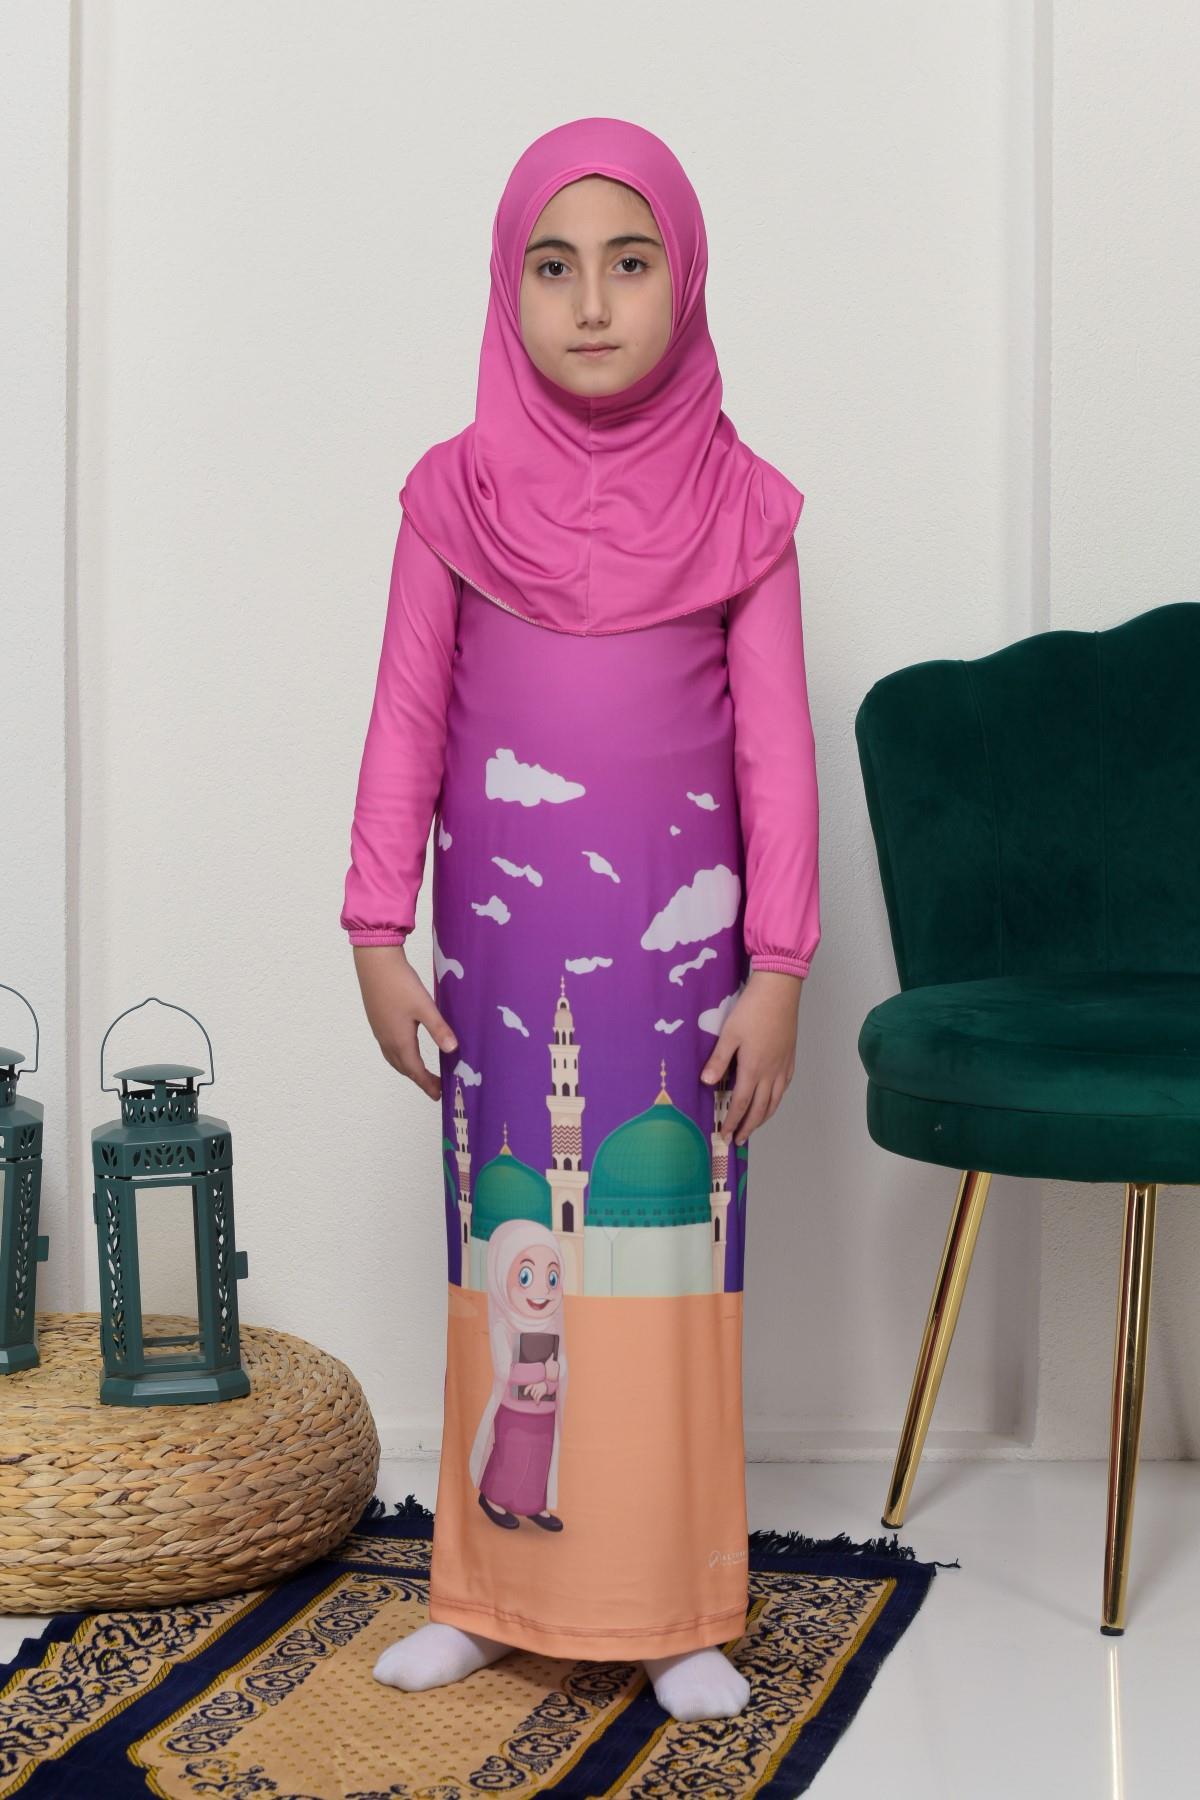 شراشف صلاة للأطفال قطعة واحدة من الليكرا وردي غامق - تصميم مميز وجودة عالية